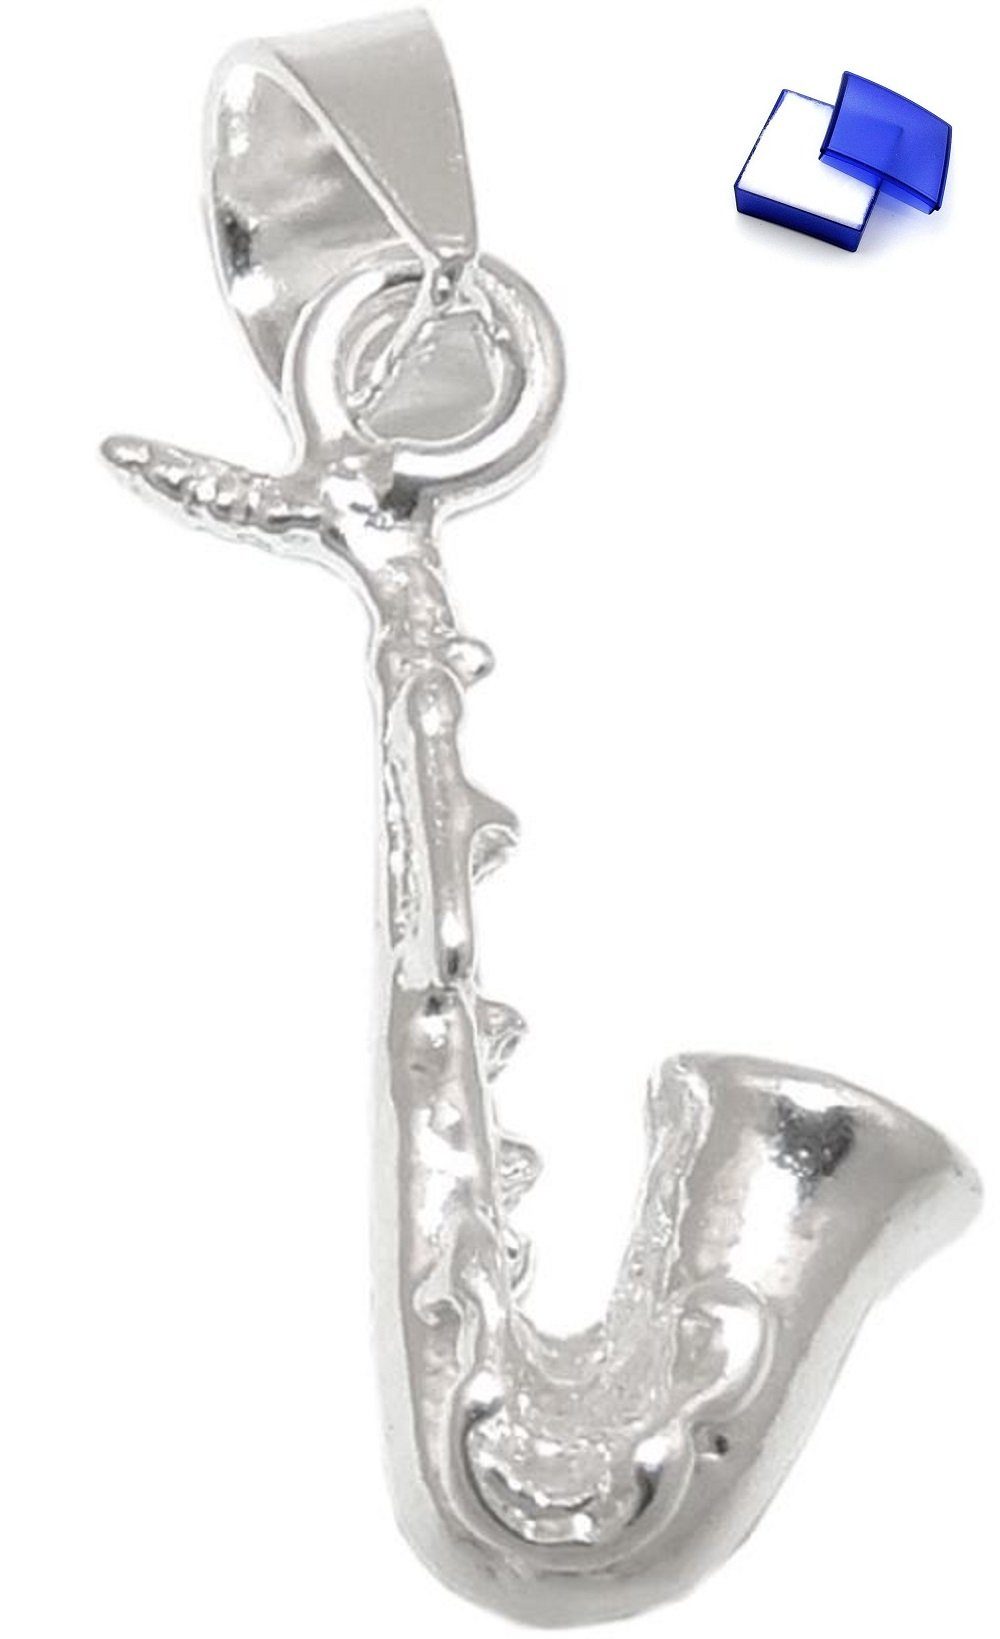 unbespielt Kettenanhänger Anhänger Blasinstrument Saxofon 925 Silber 16 x 6 mm inkl. kleiner Schmuckbox, Silberschmuck für Damen und Herren